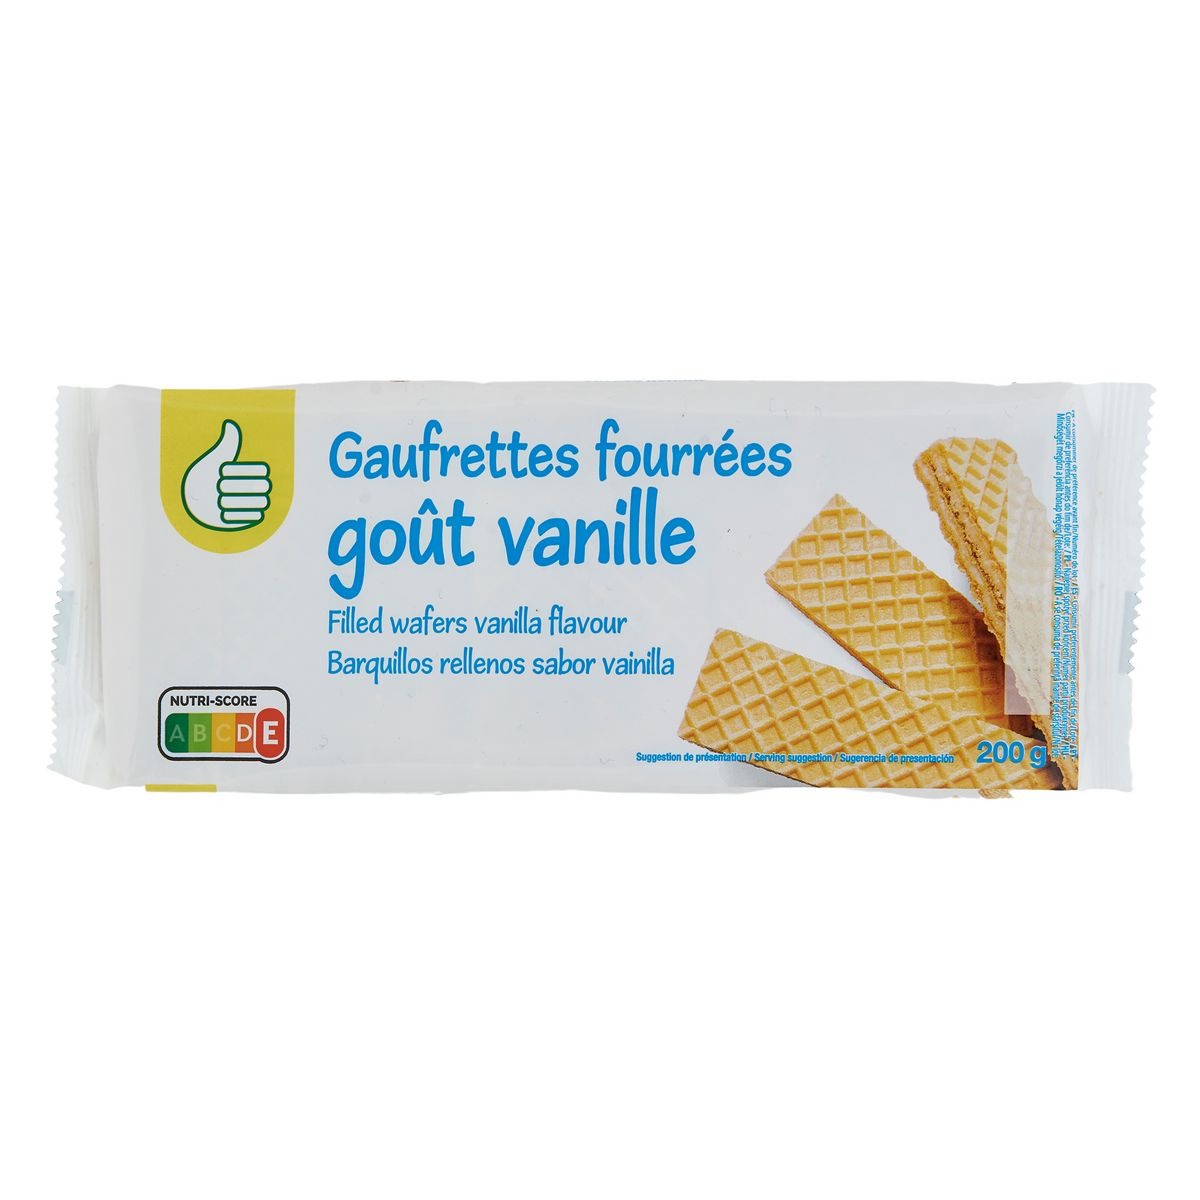 POUCE Gaufrettes fourrées goût vanille 200g pas cher 